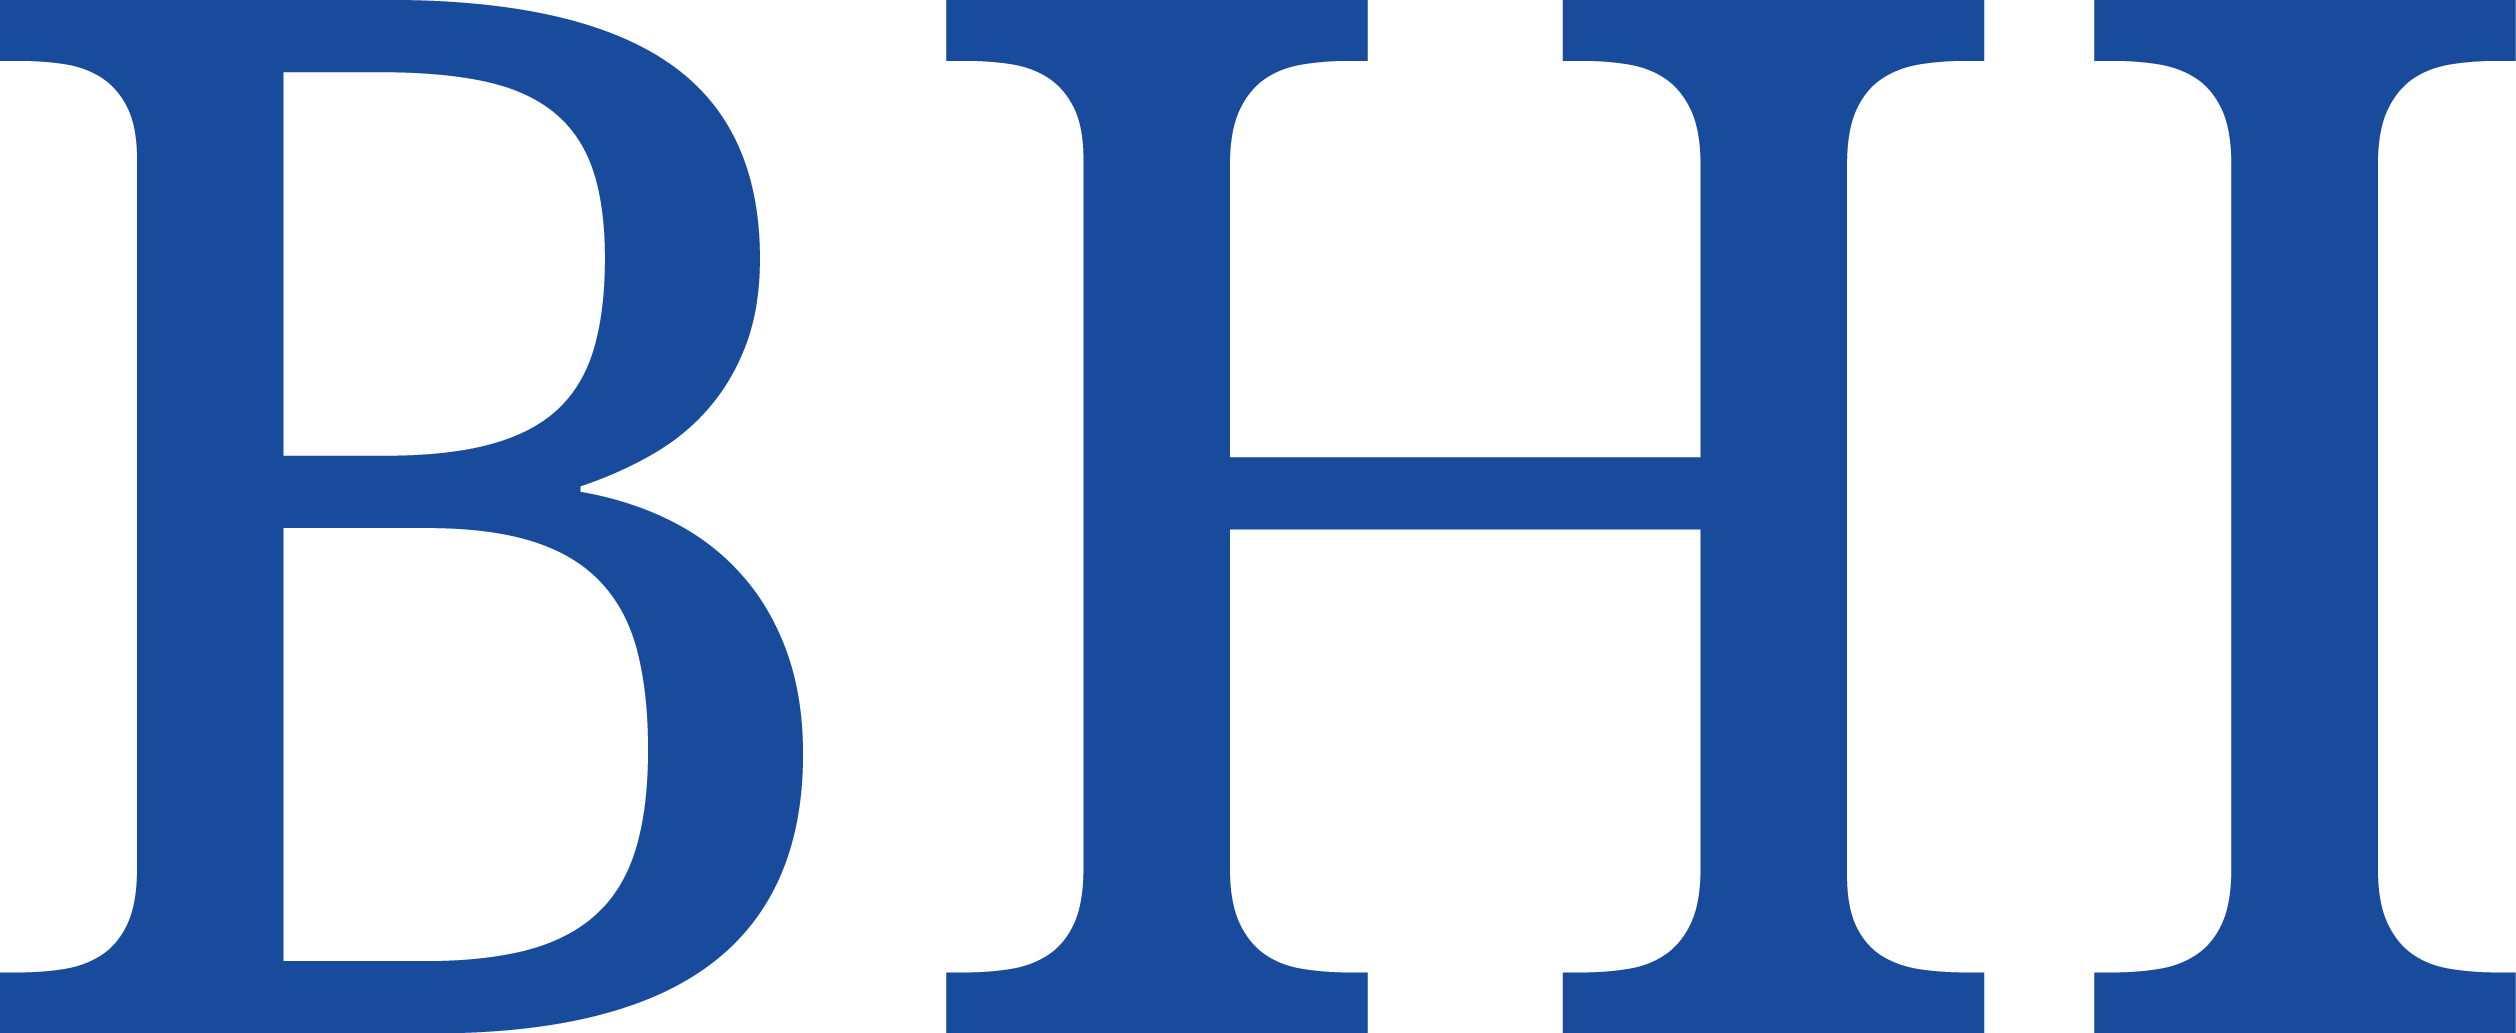 Bhi Logo - Index Of Wp Content Uploads 2017 01